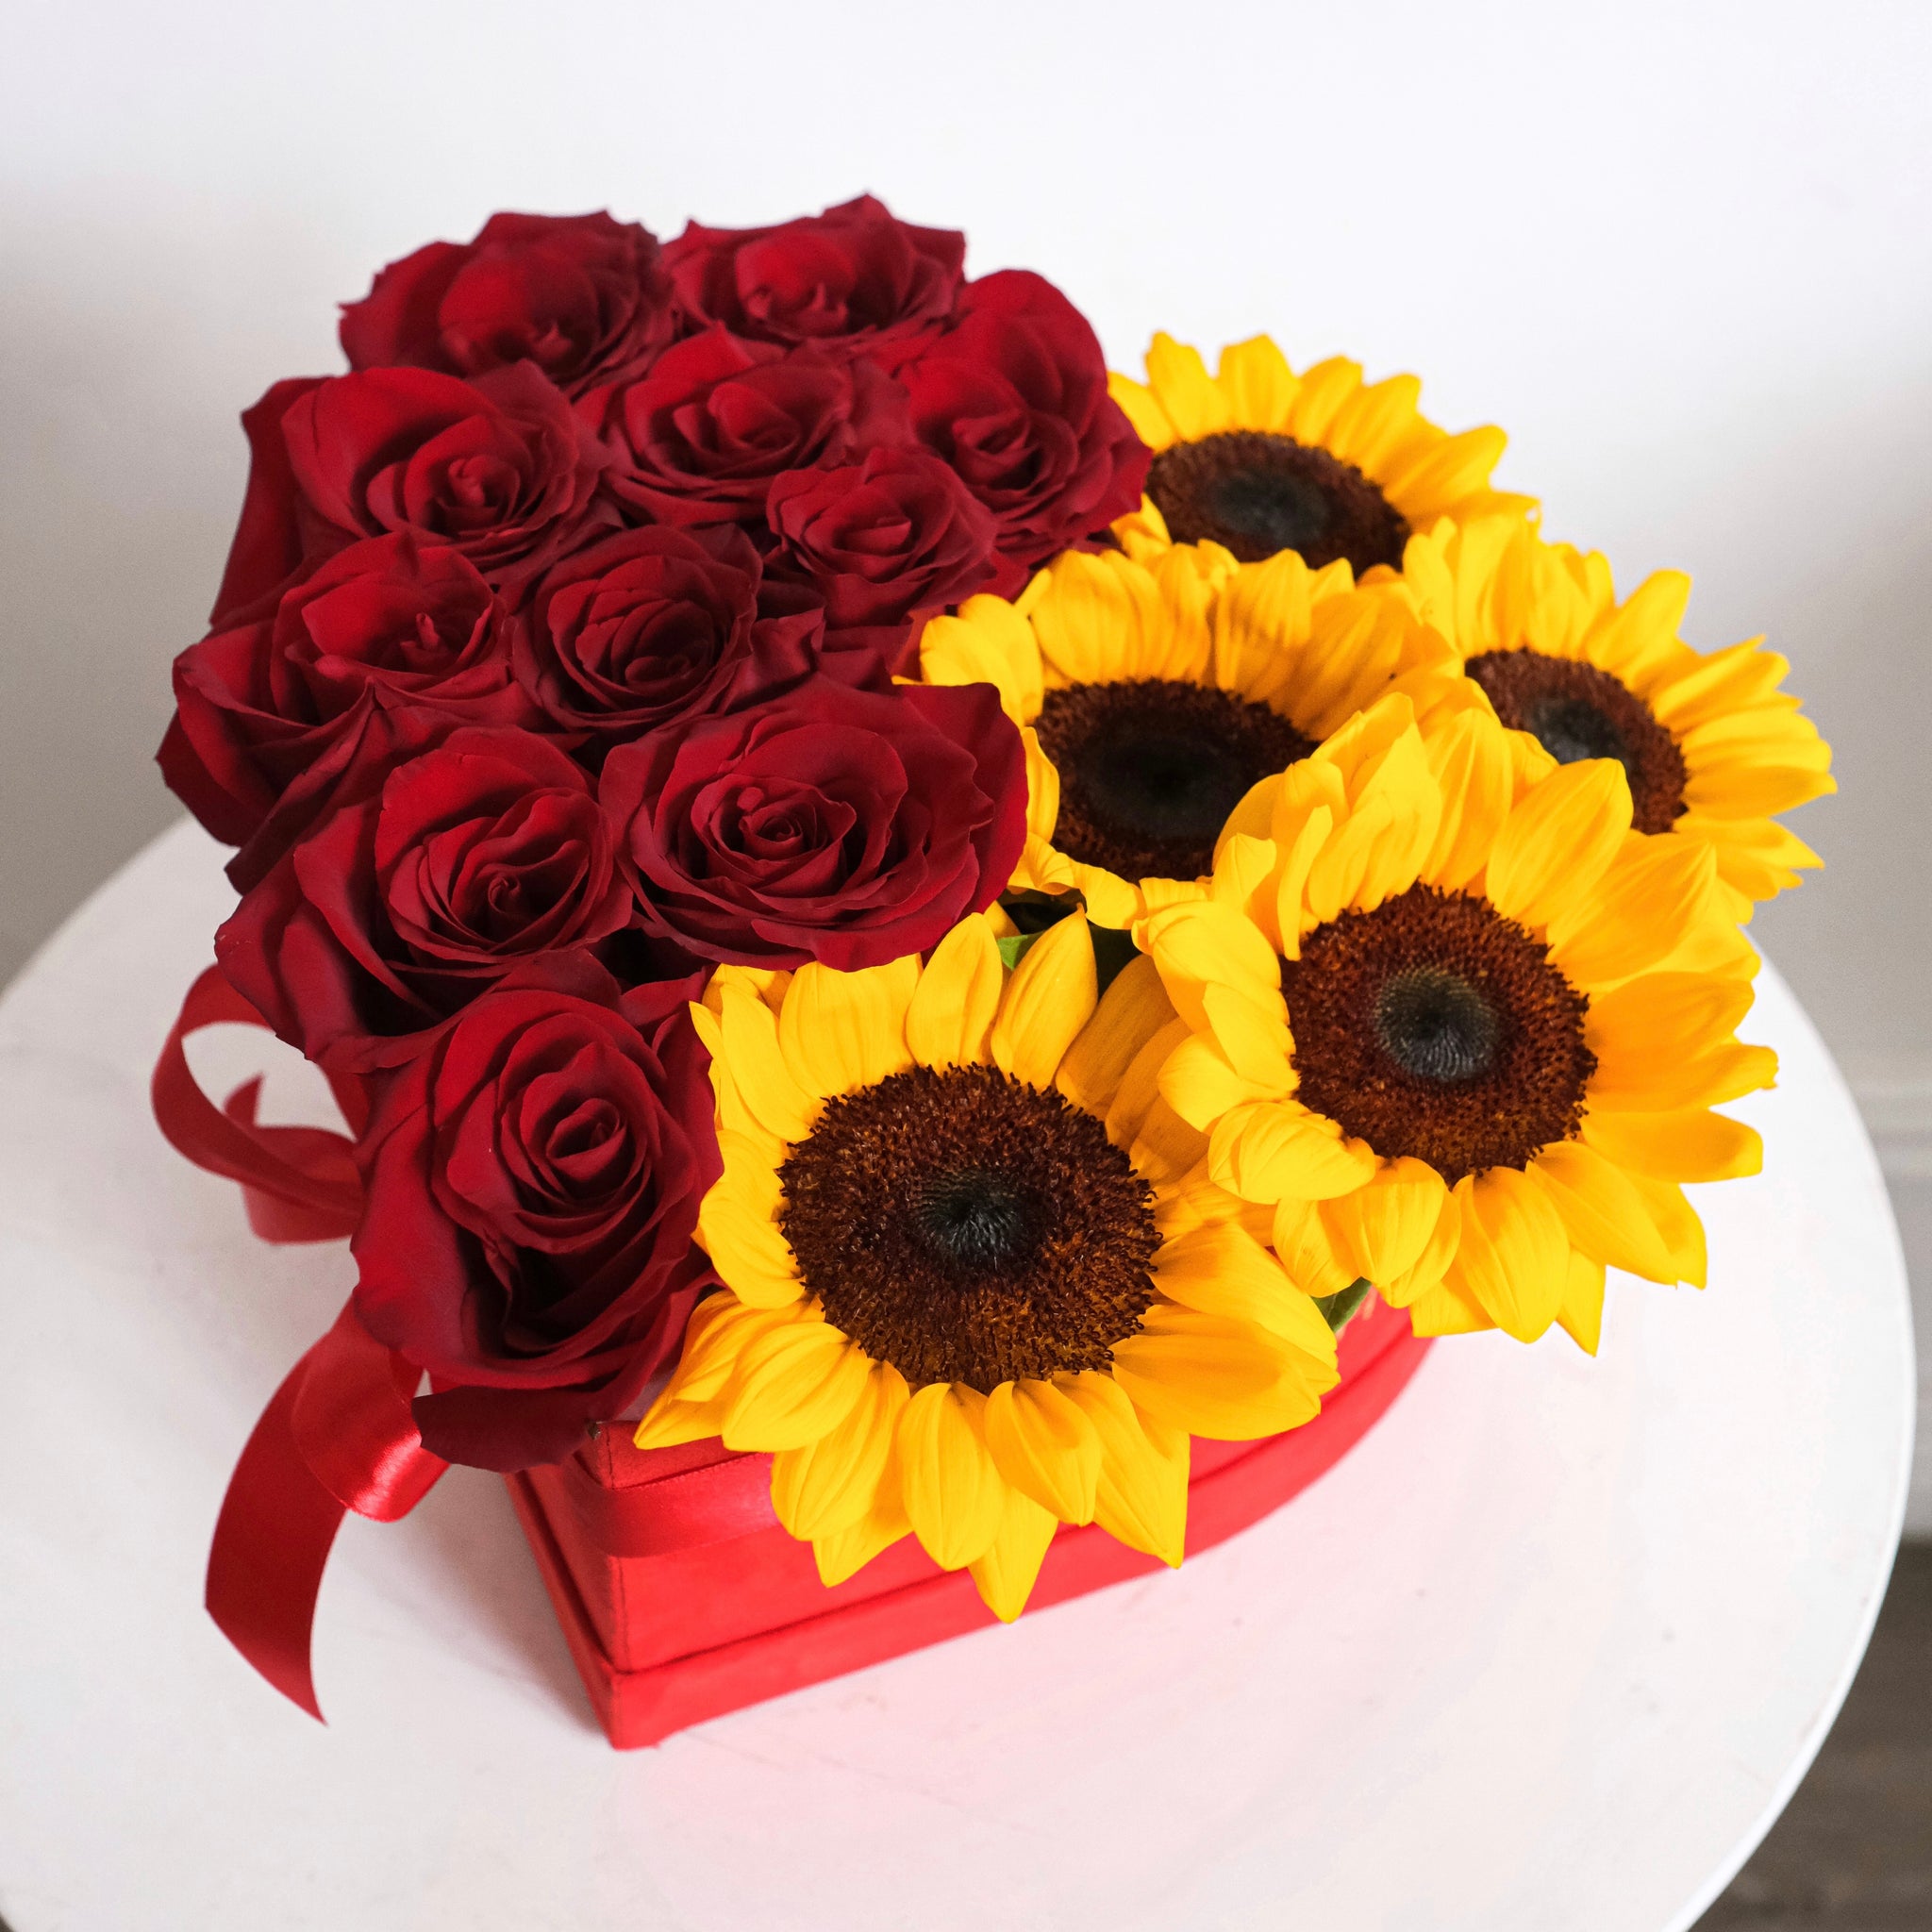 Sunflowers & Roses - Petite Heart Velvet Box